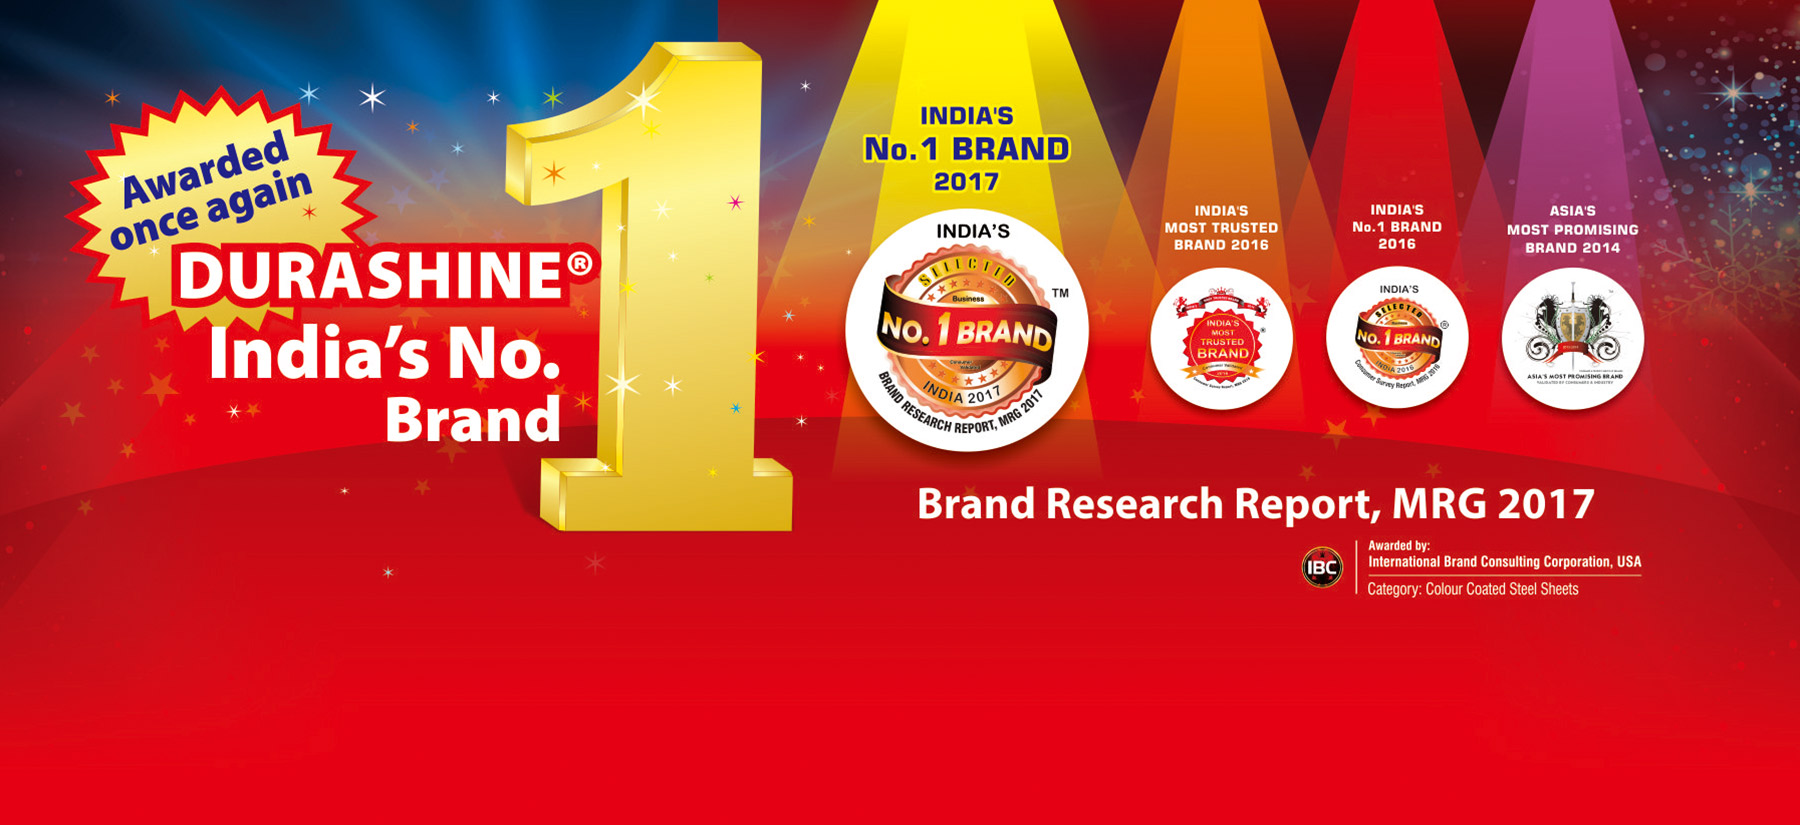 Durashine Indias No. 1 brand